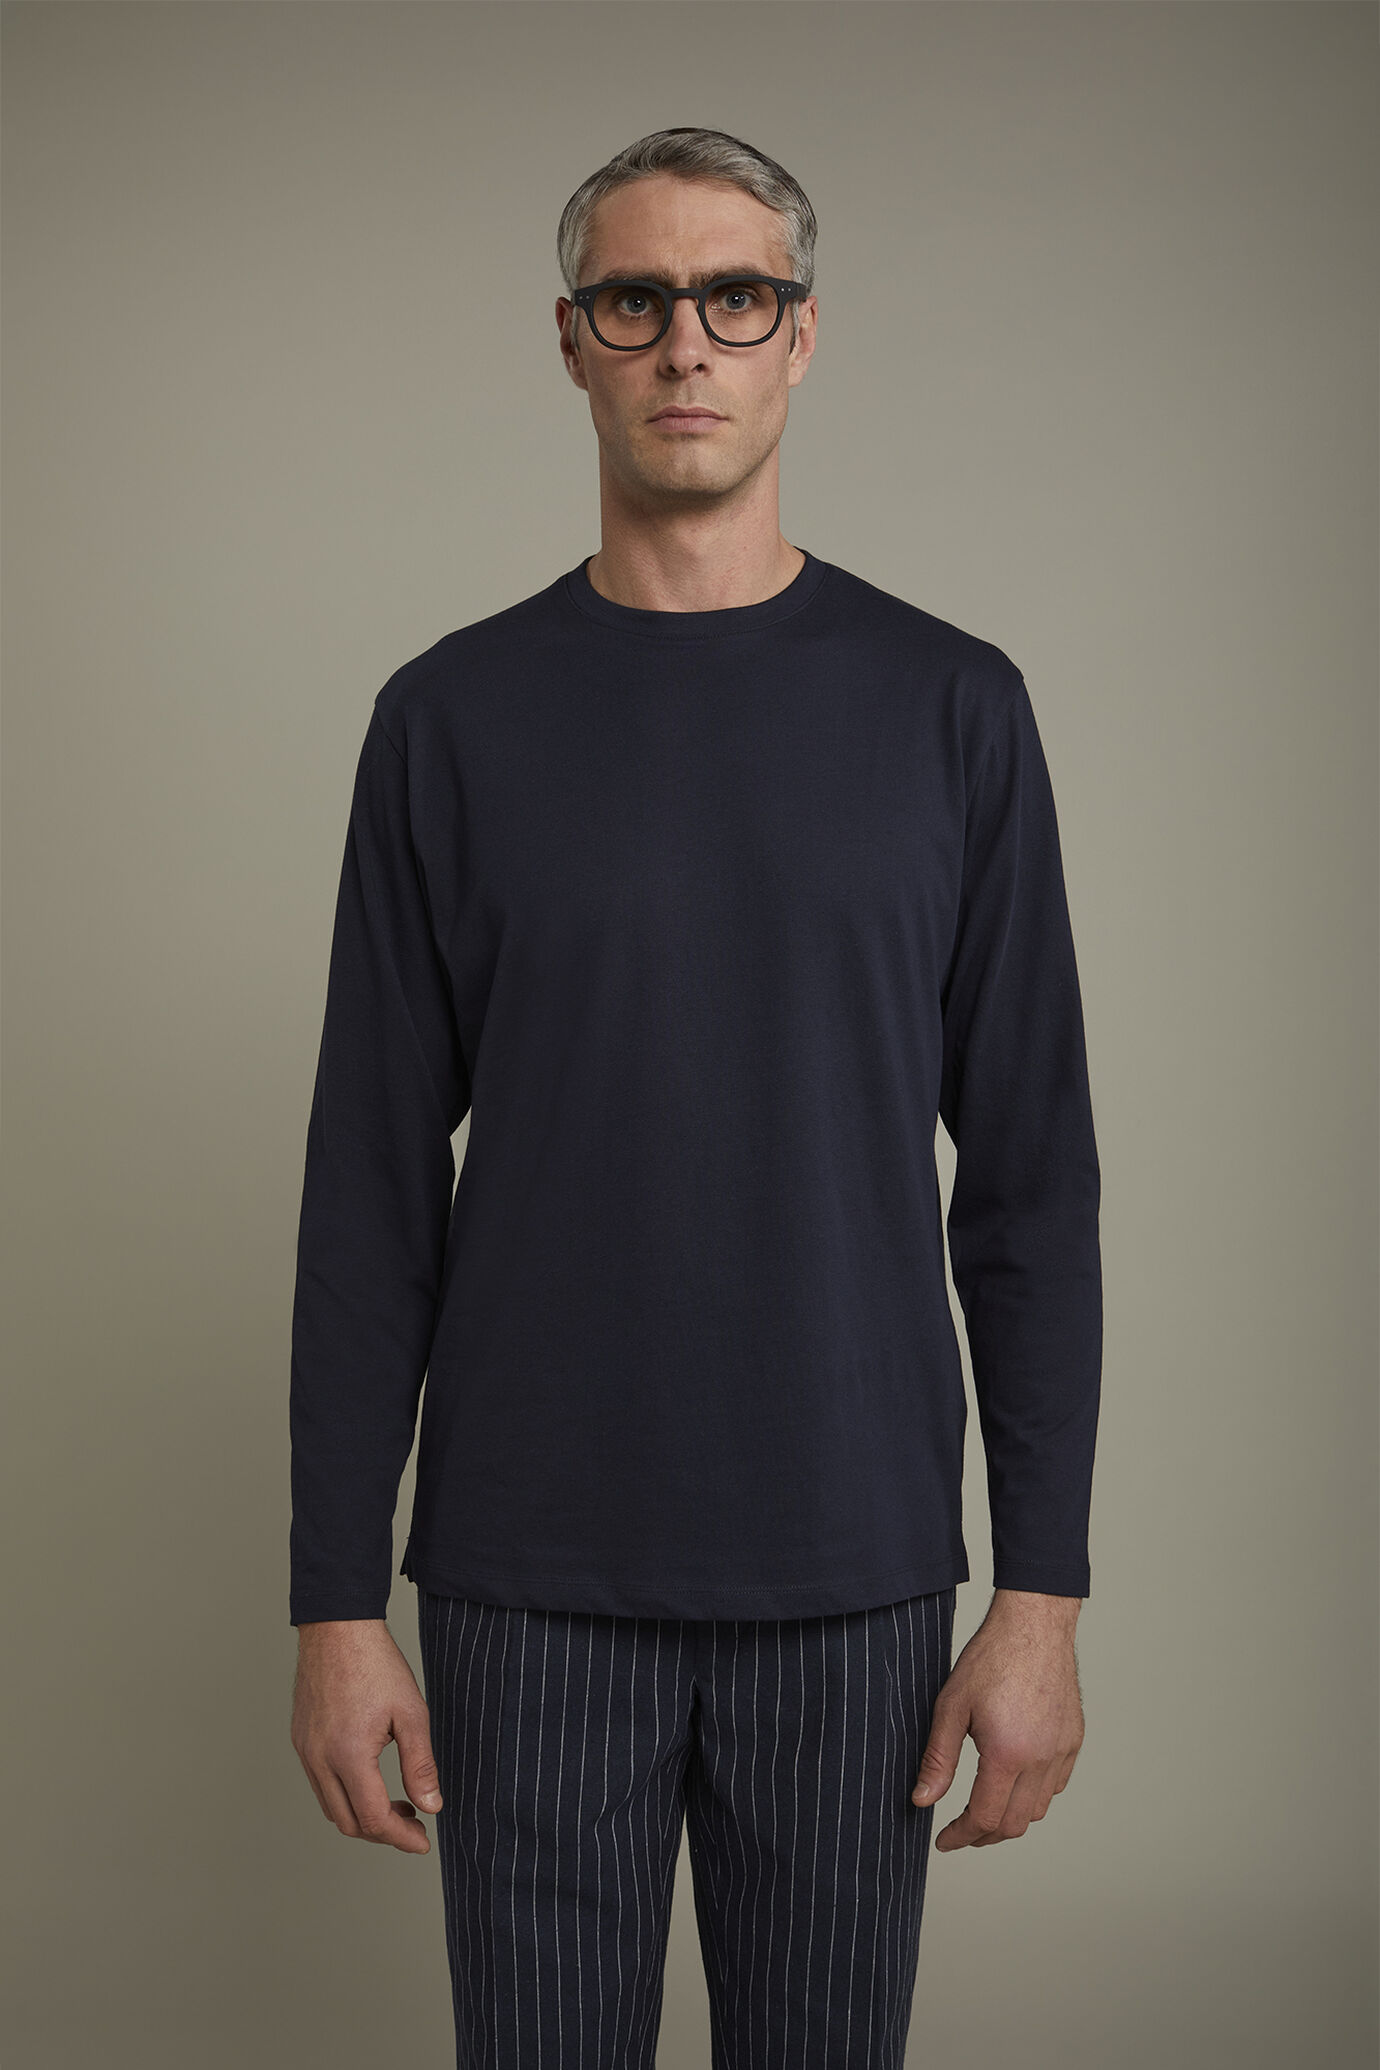 Herren-T-Shirt mit Rundhalsausschnitt und langen Ärmeln aus 100 % Baumwolle in normaler Passform